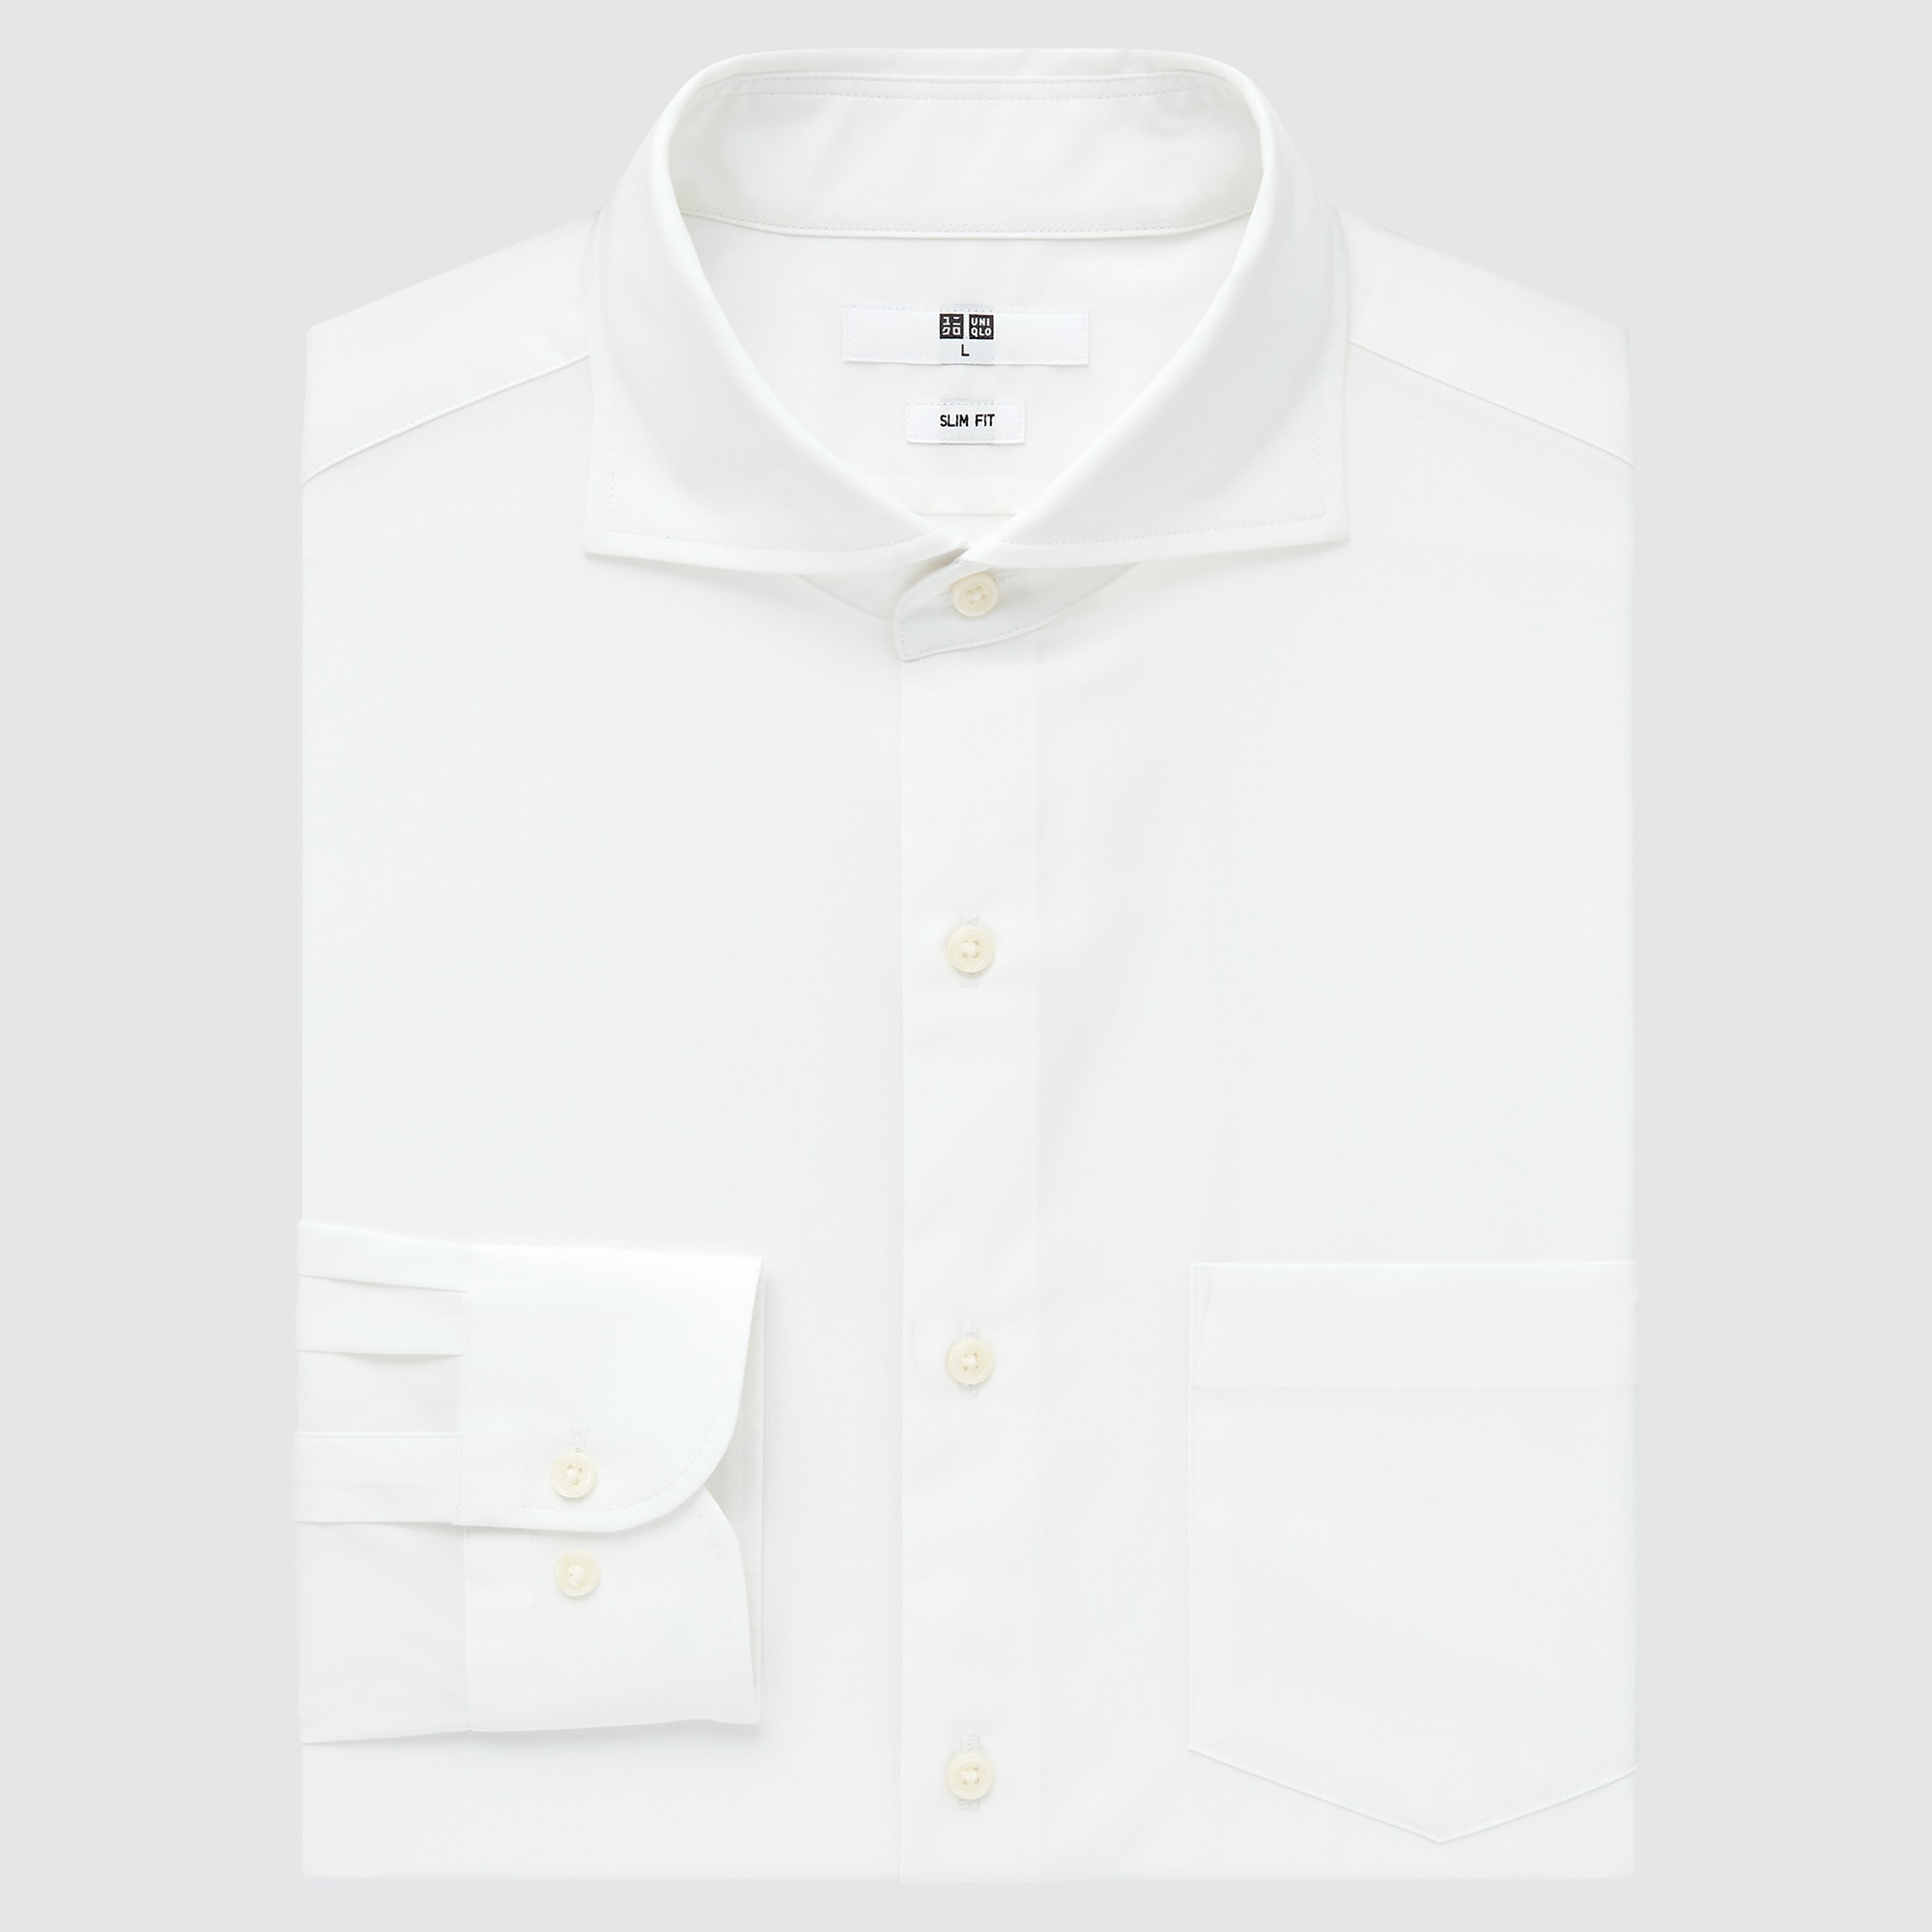 ワイシャツ ビジネスの関連商品 | ユニクロ